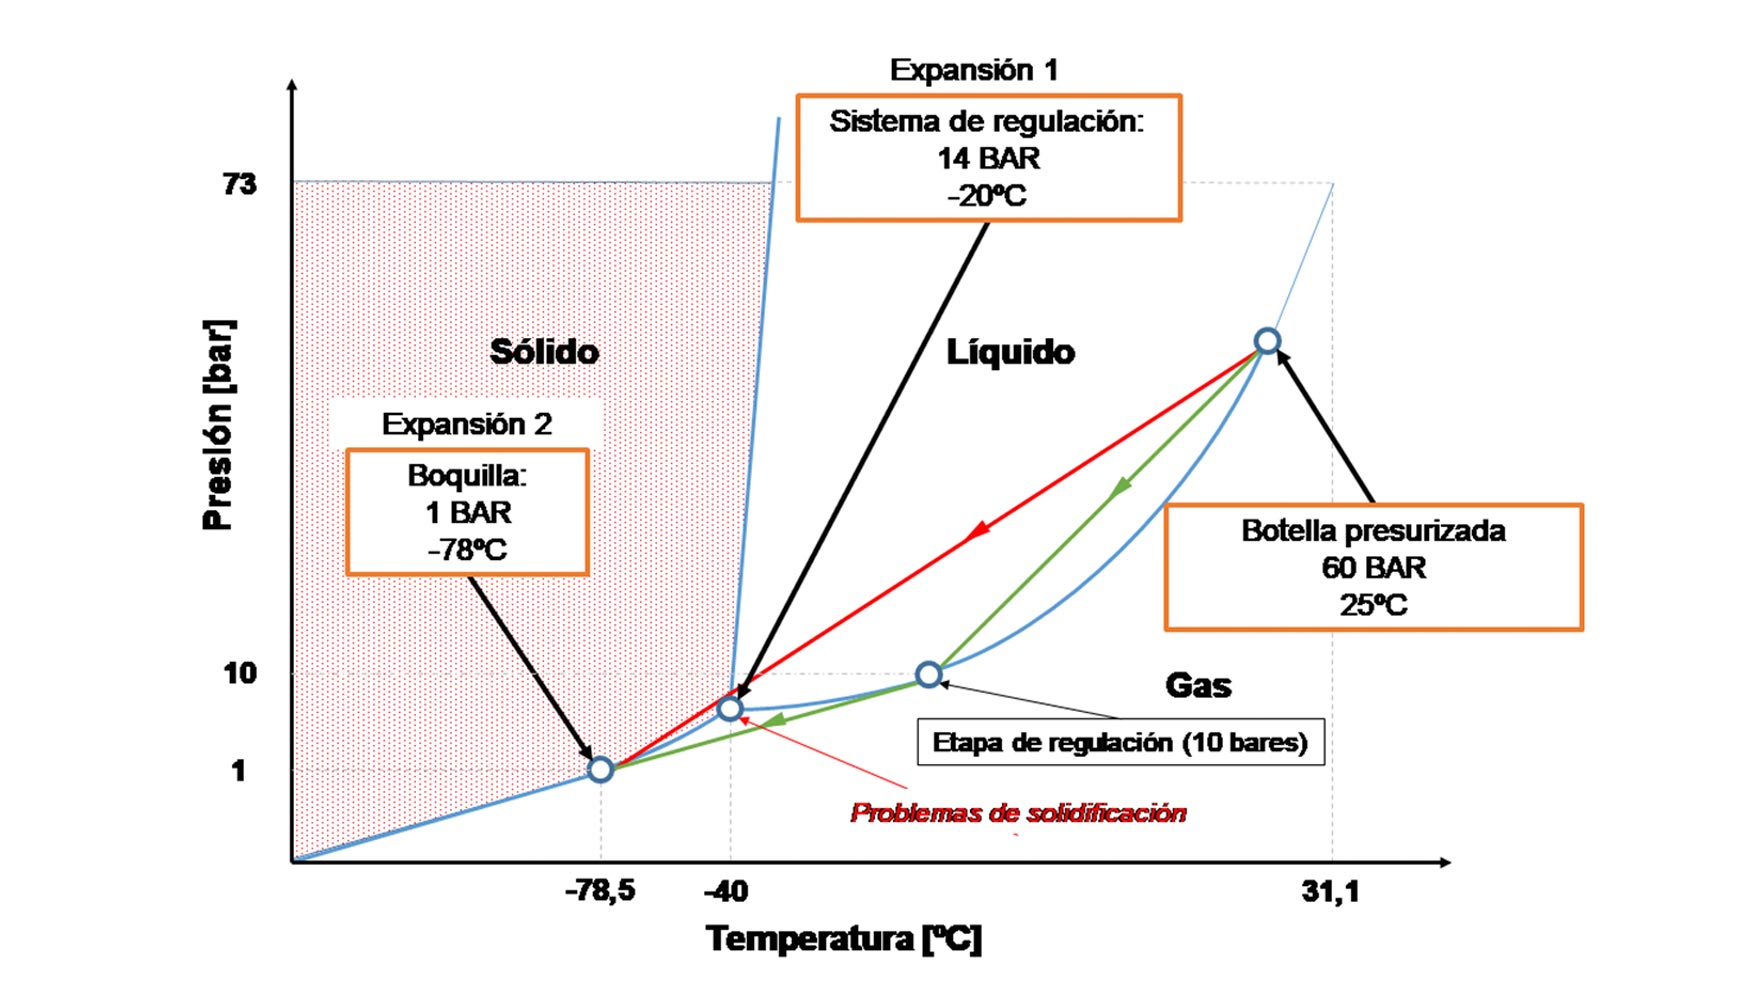 Figura 2. Diagrama de fases CO2